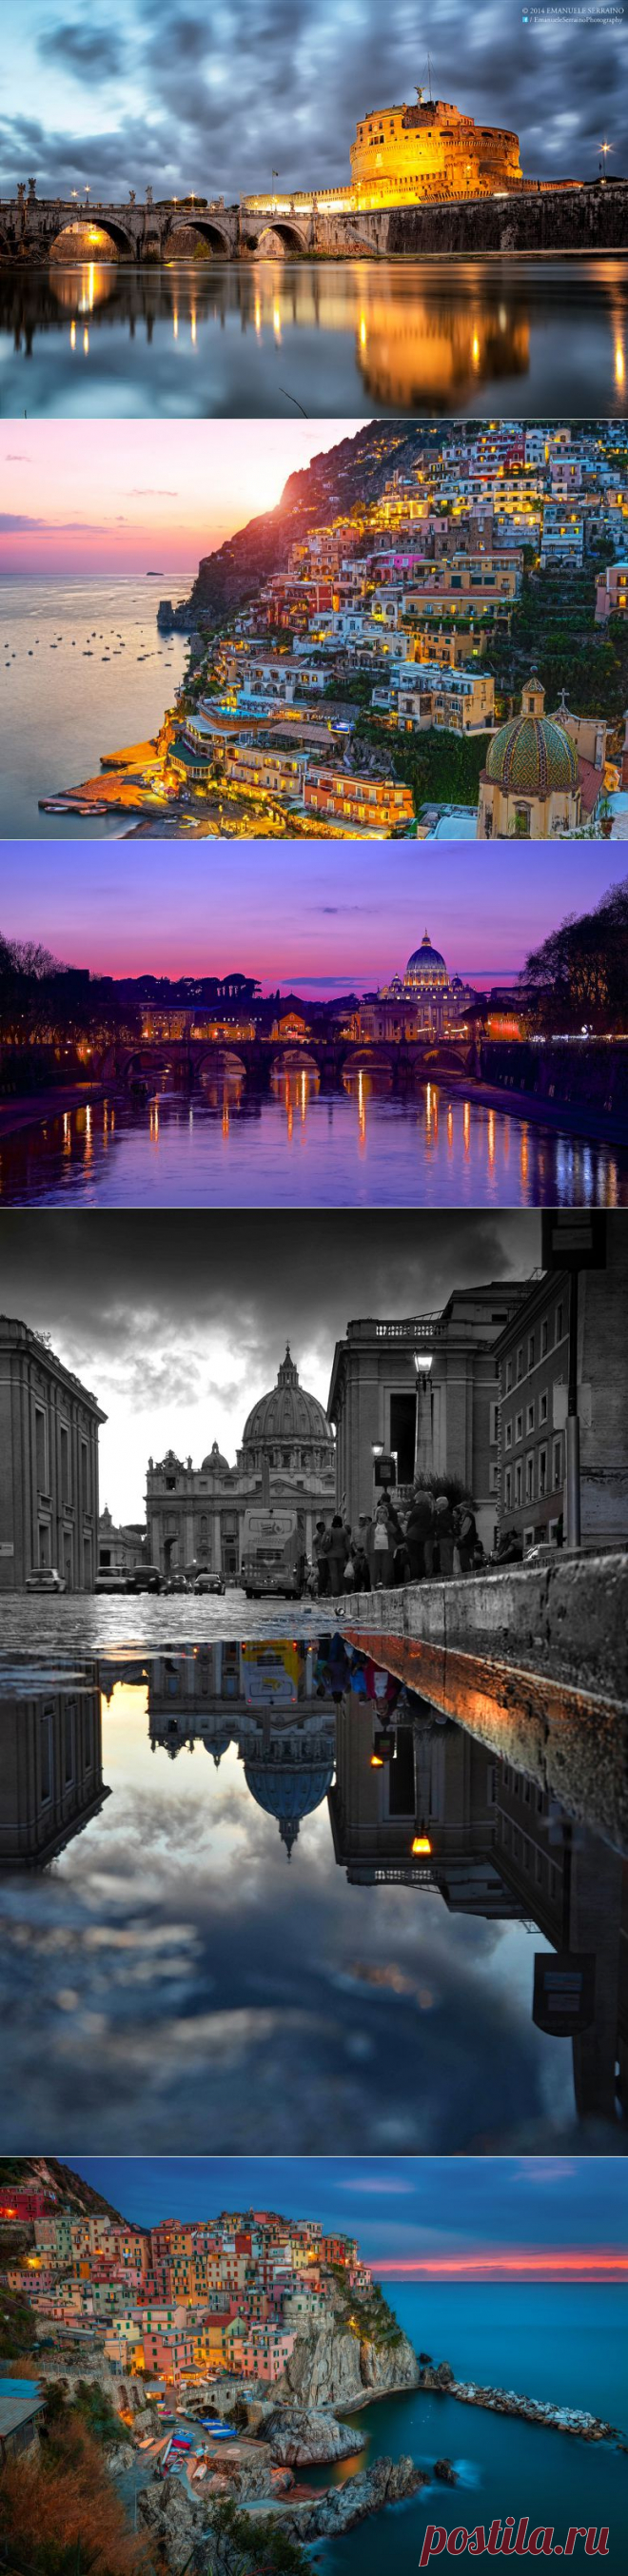 Специалист по туризму : Италия - Итальянская Республика